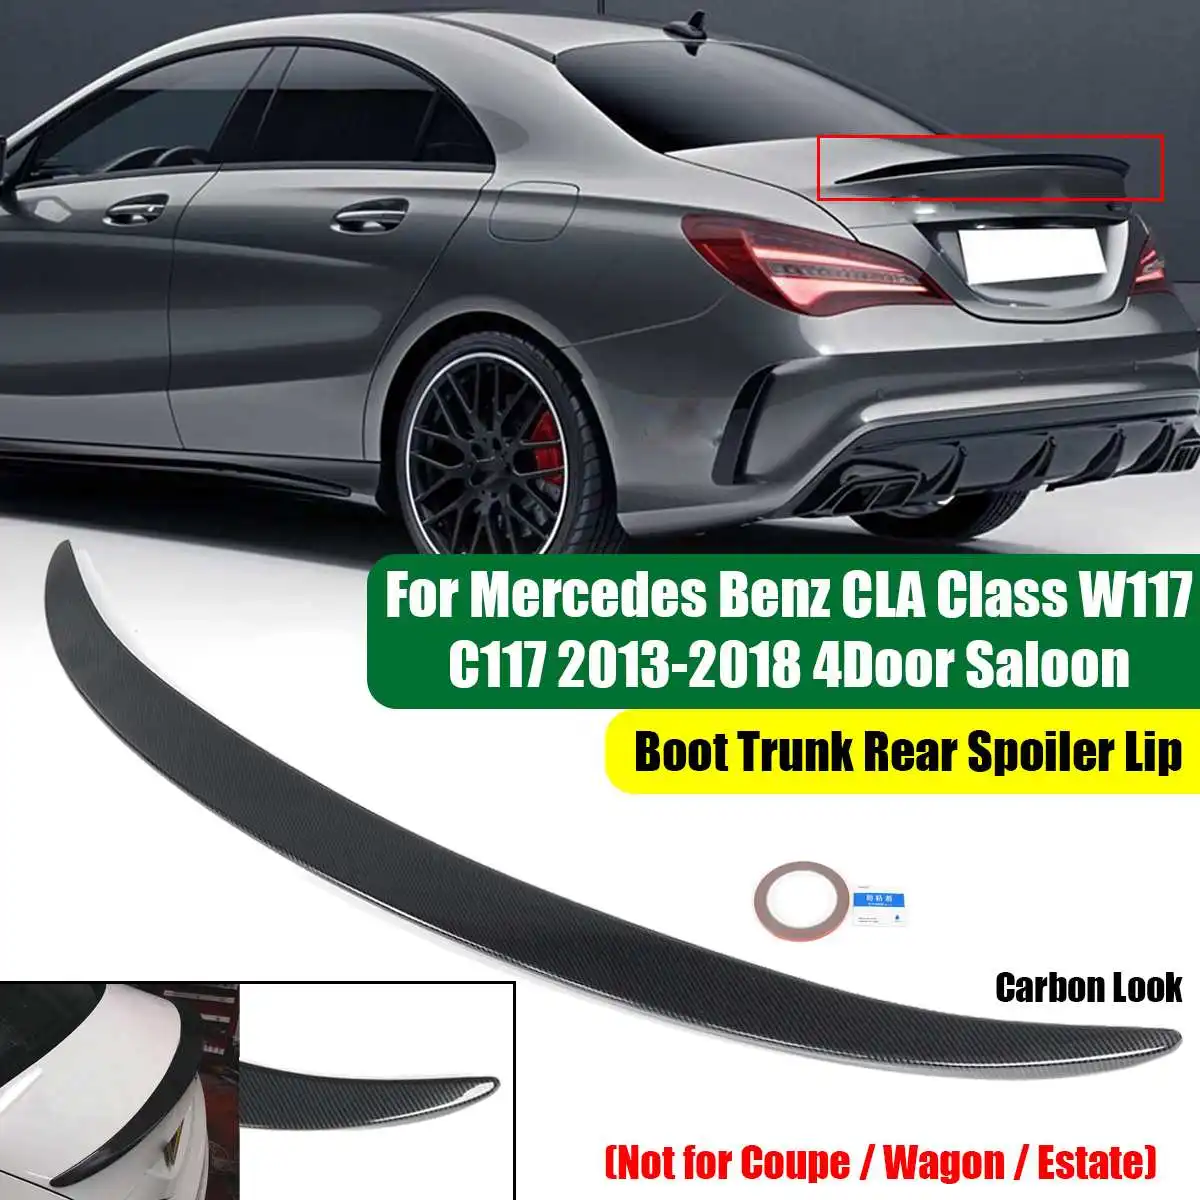 

W117 Car Rear Trunk Spoiler Lip Boot Wing Lip For Mercedes CLA Class W117 C117 2013-2018 4Door Saloon Rear Spoiler Wing Lip